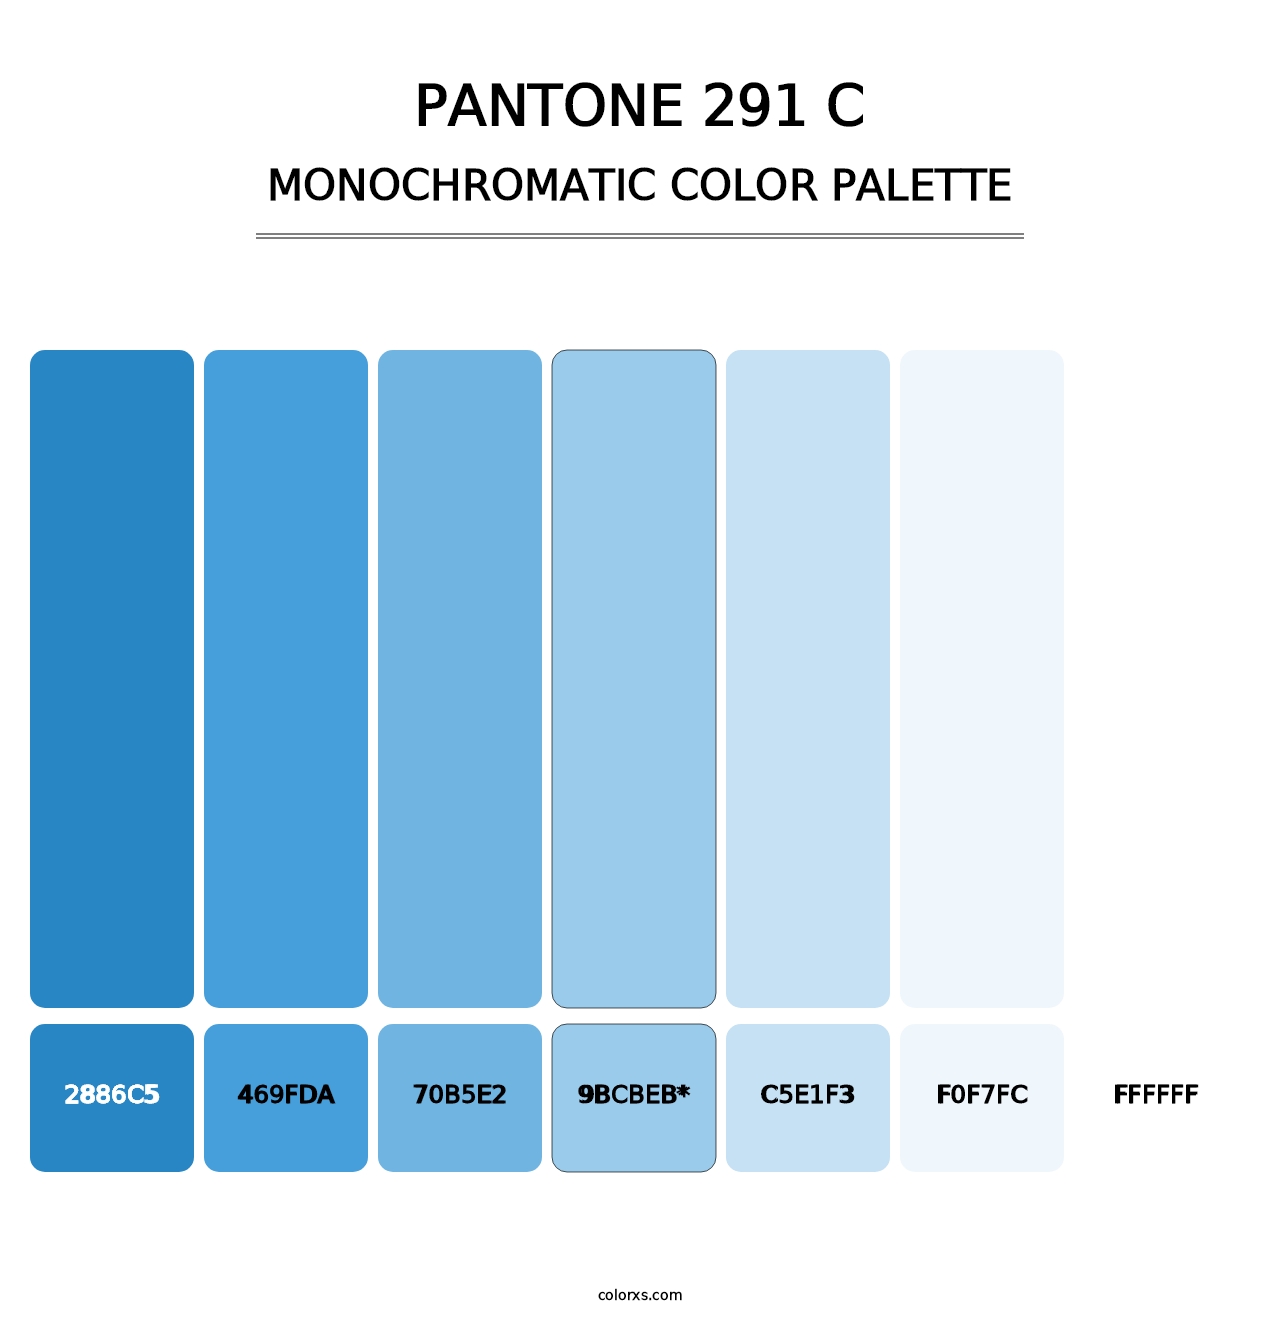 PANTONE 291 C - Monochromatic Color Palette